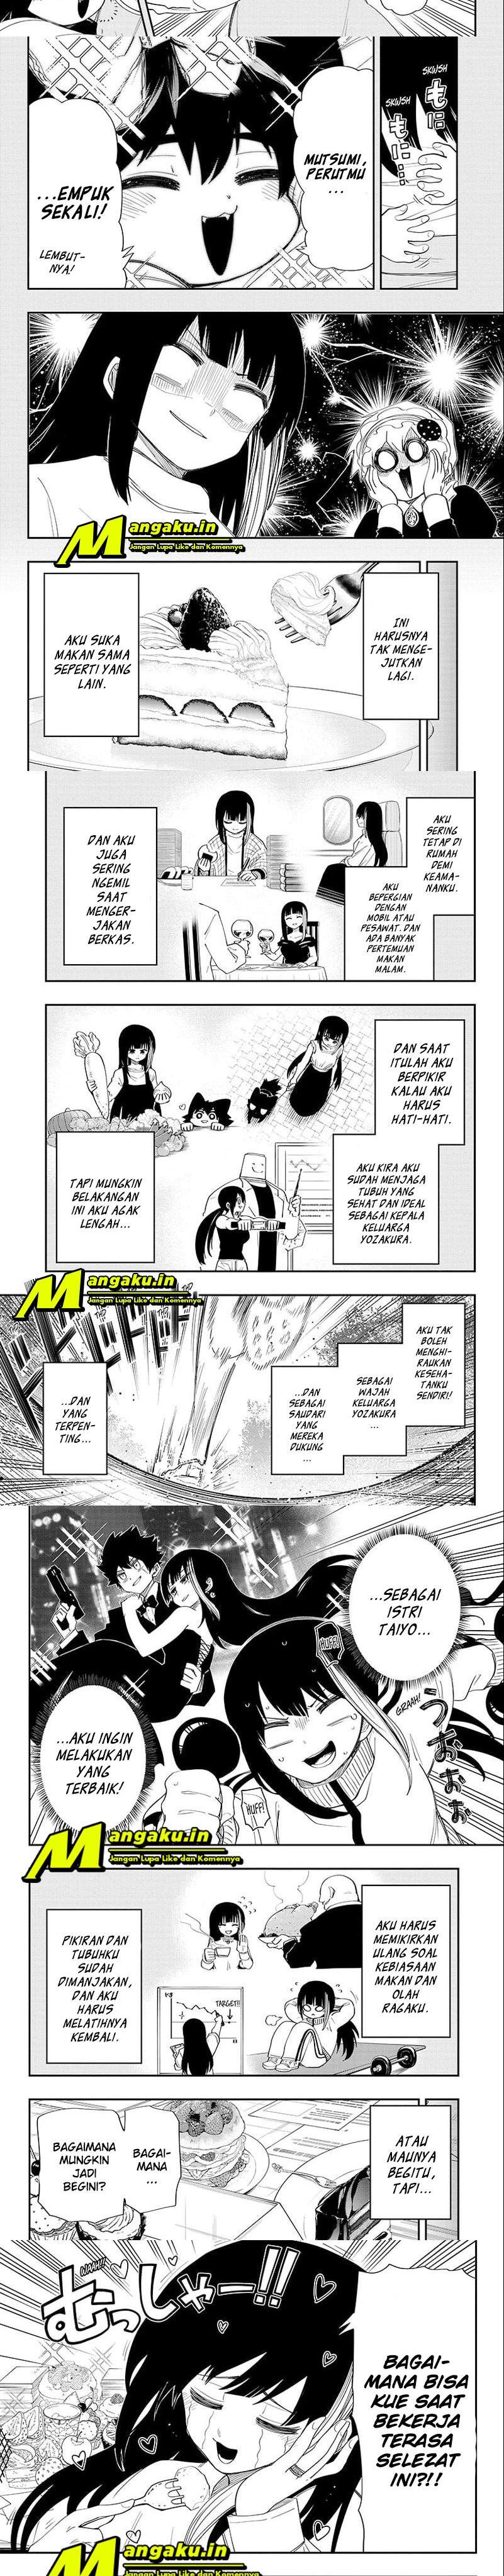 Mission: Yozakura Family Chapter 105 2